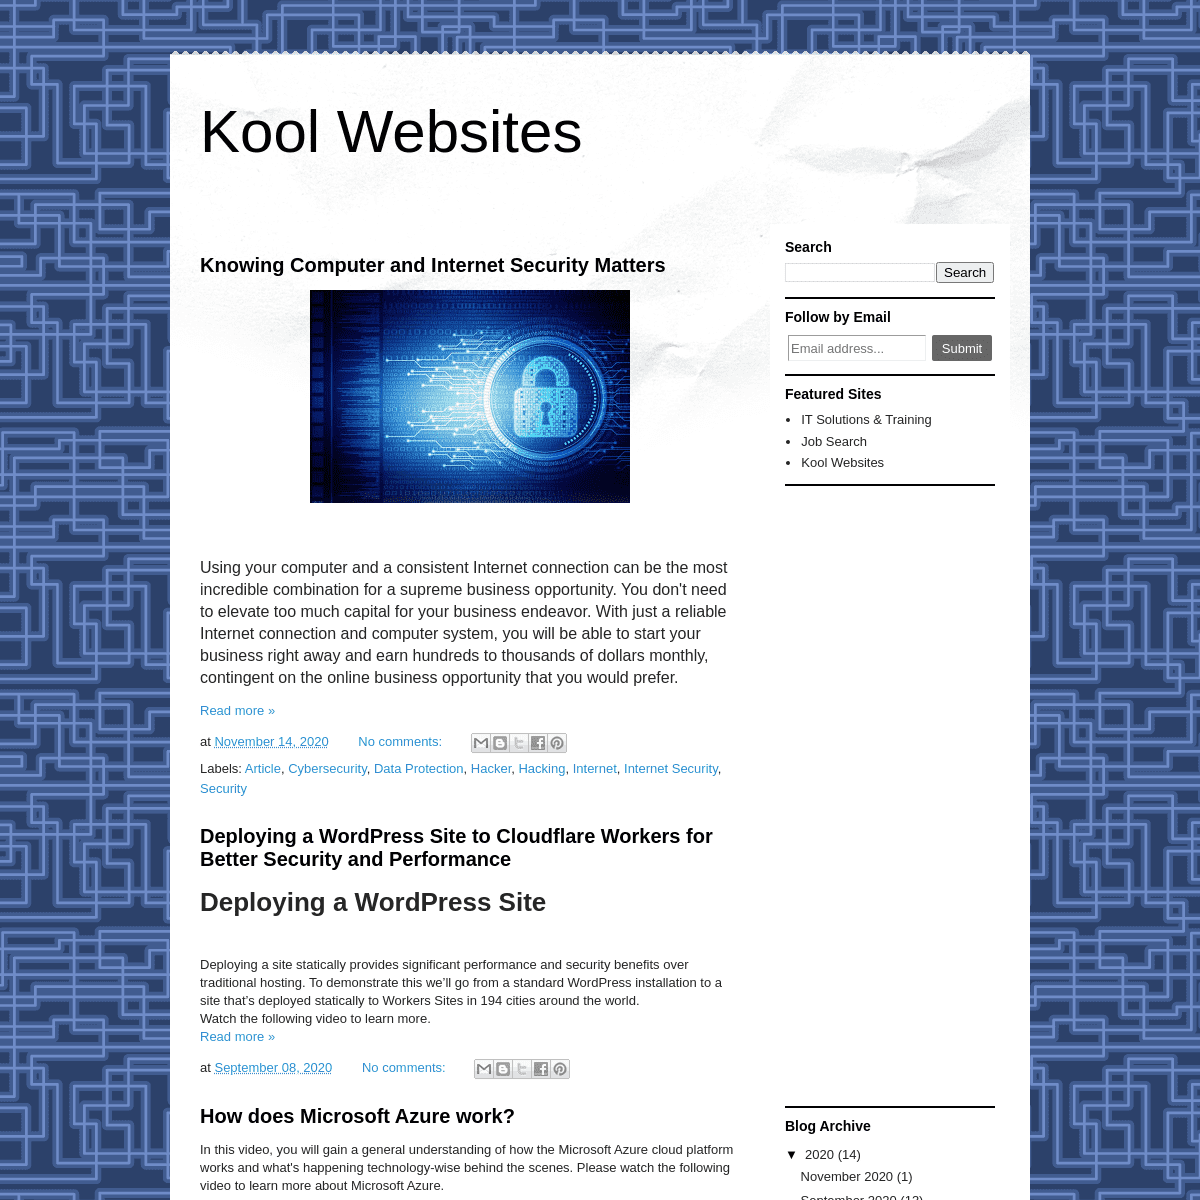 A complete backup of koolwebsites.com